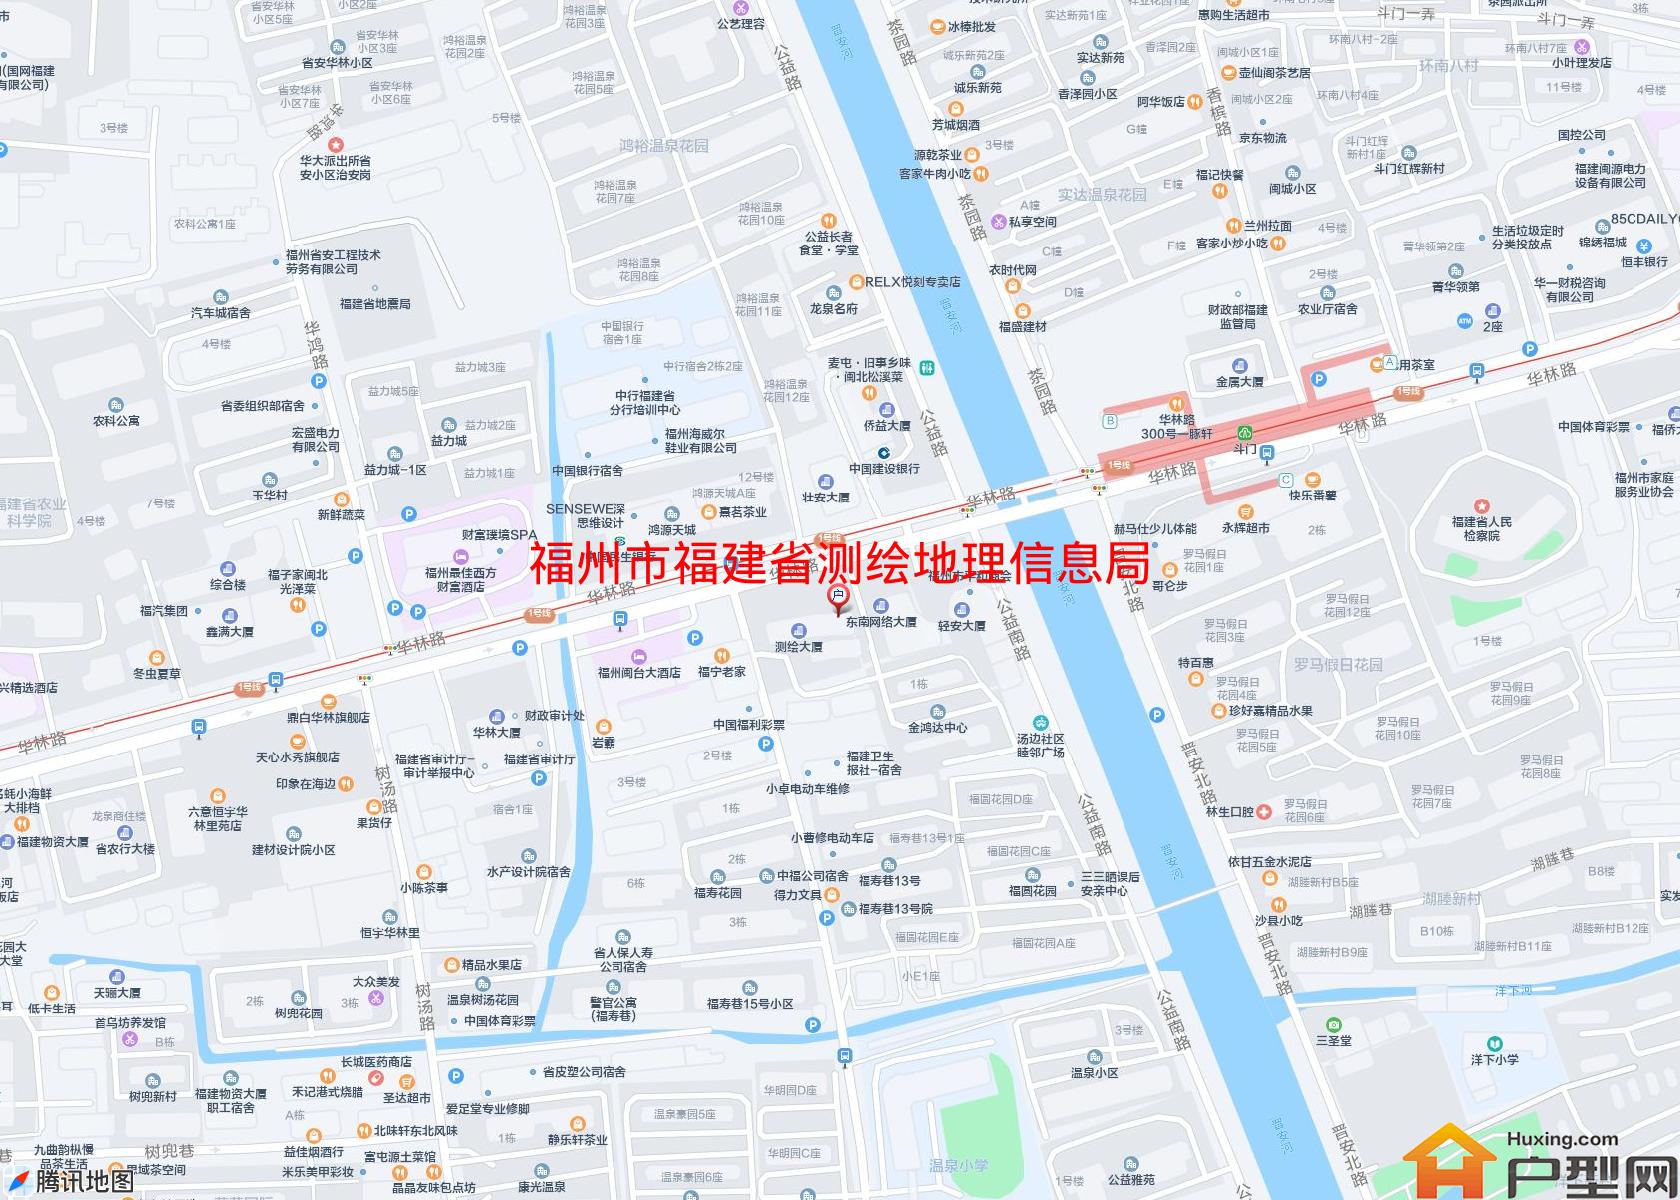 福建省测绘地理信息局华林基地宿舍小区 - 户型网